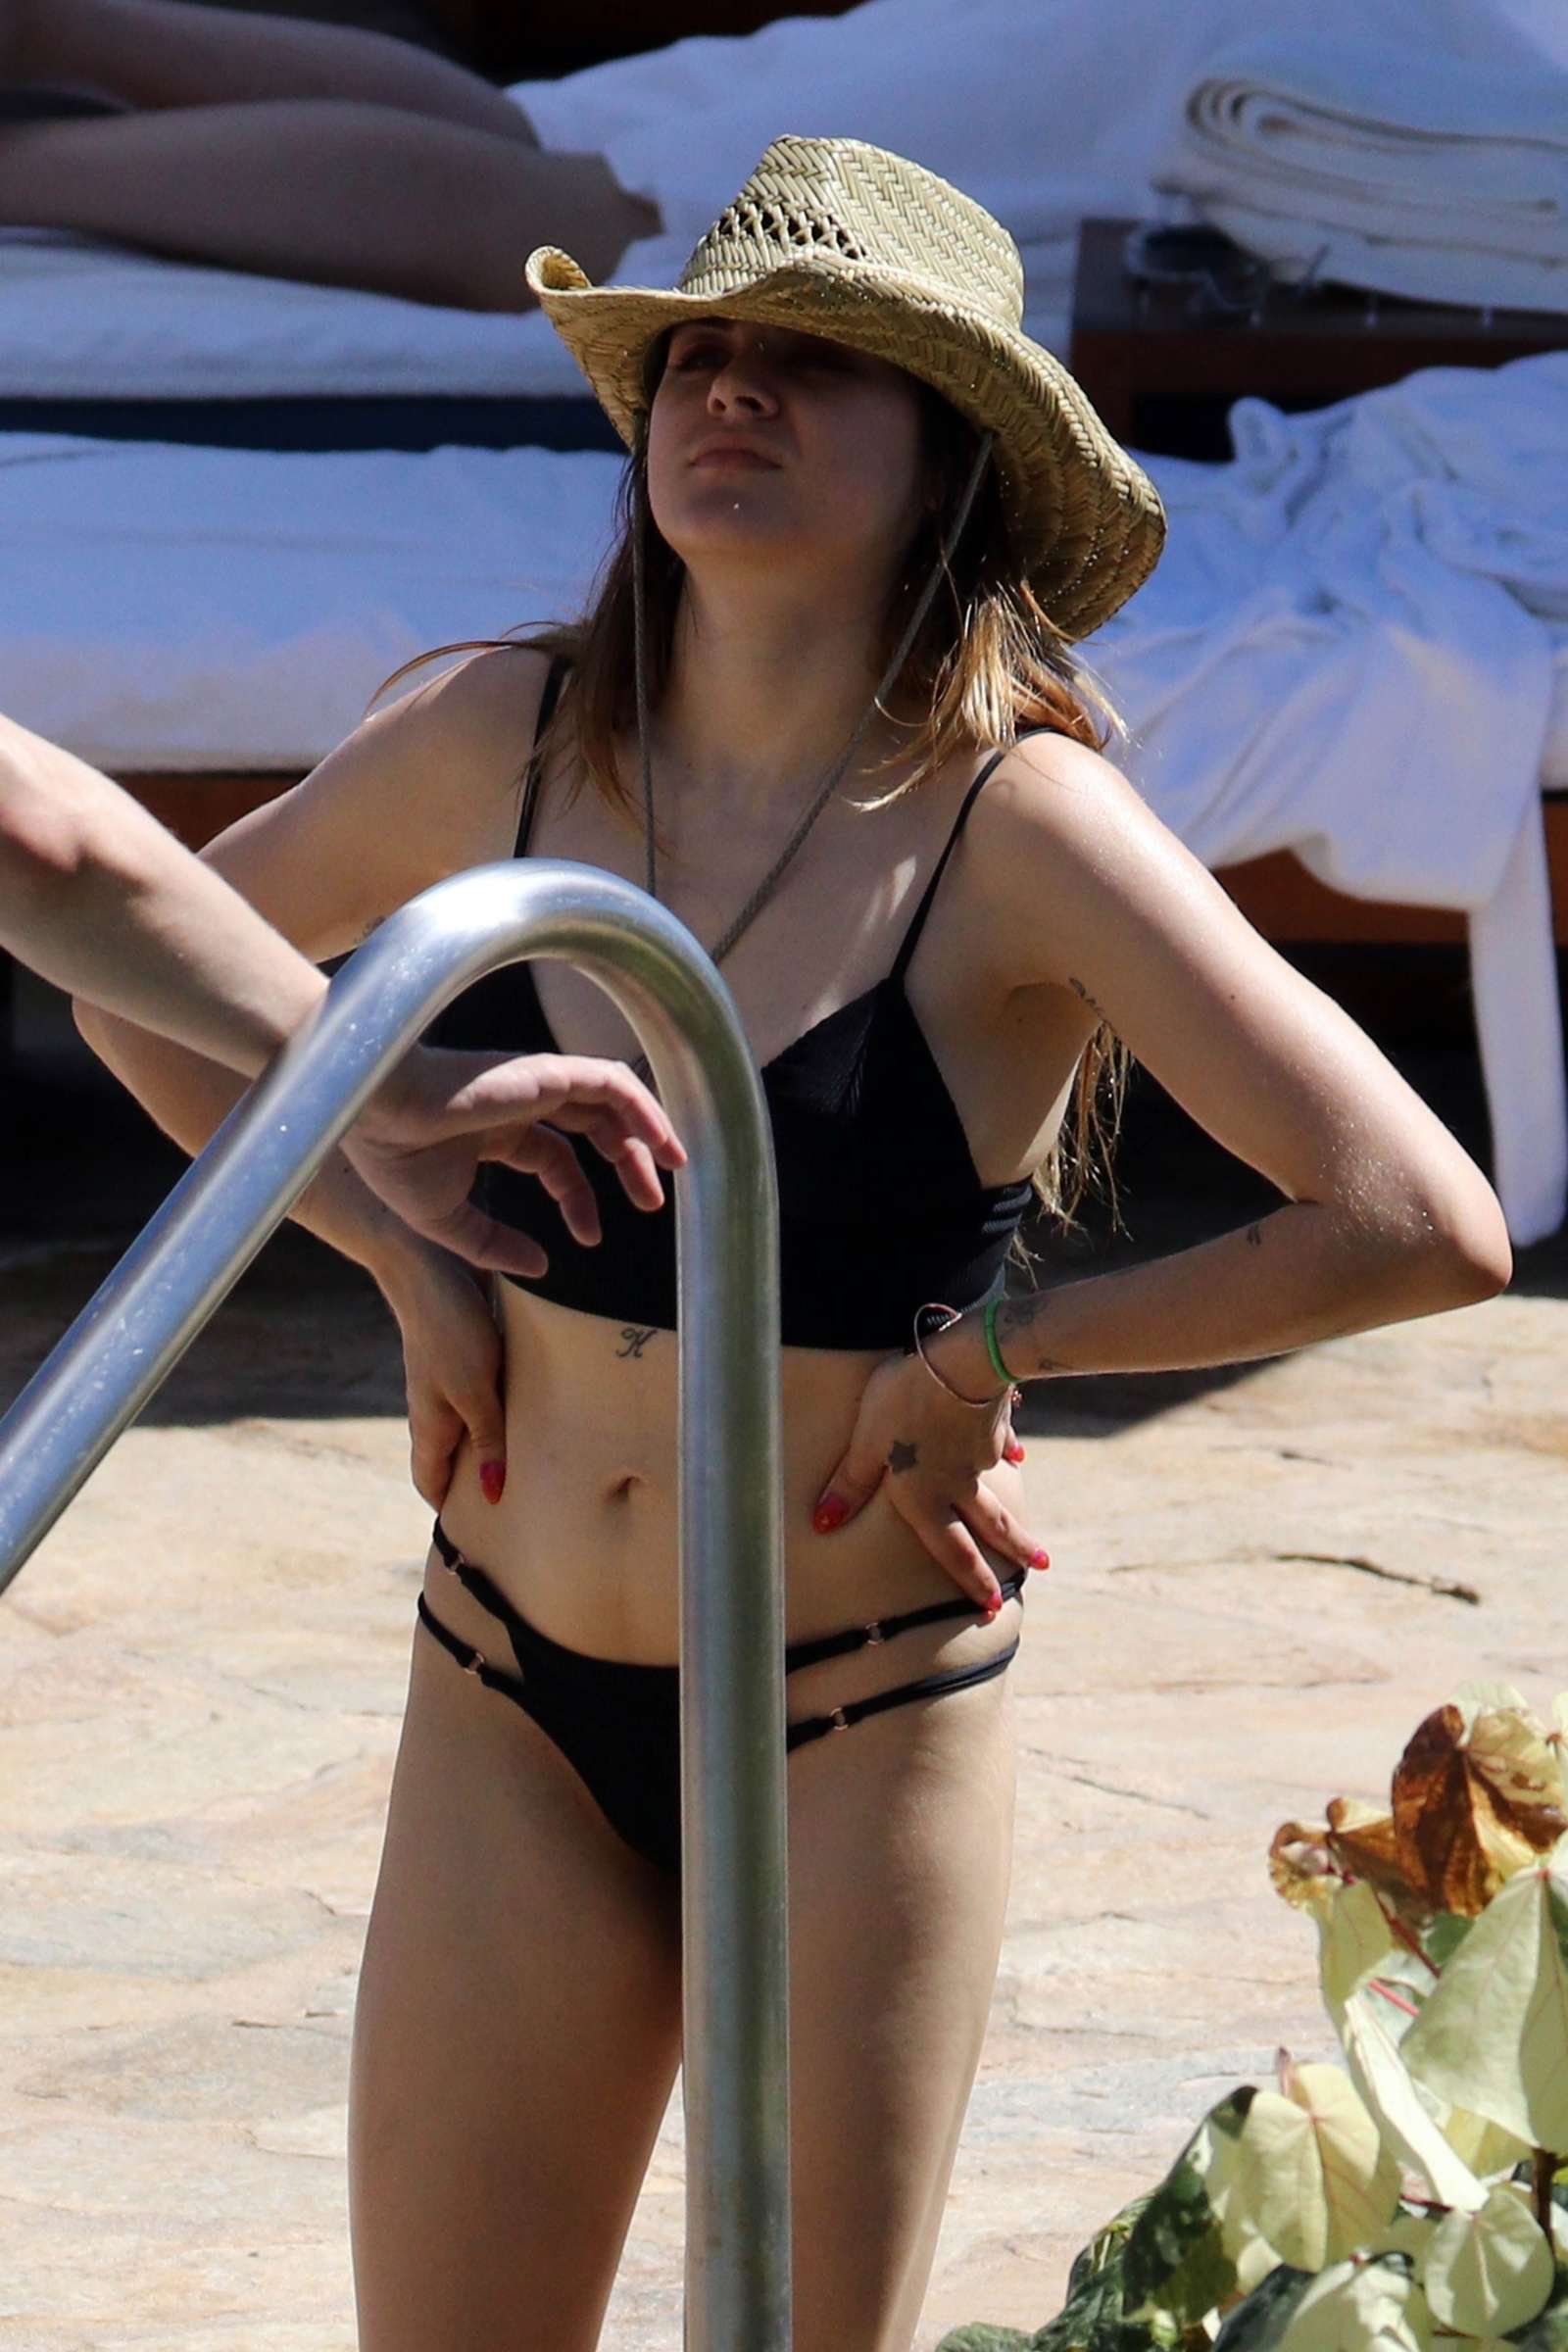 Frances Bean in Black Bikini on the pool in Hawaii. 